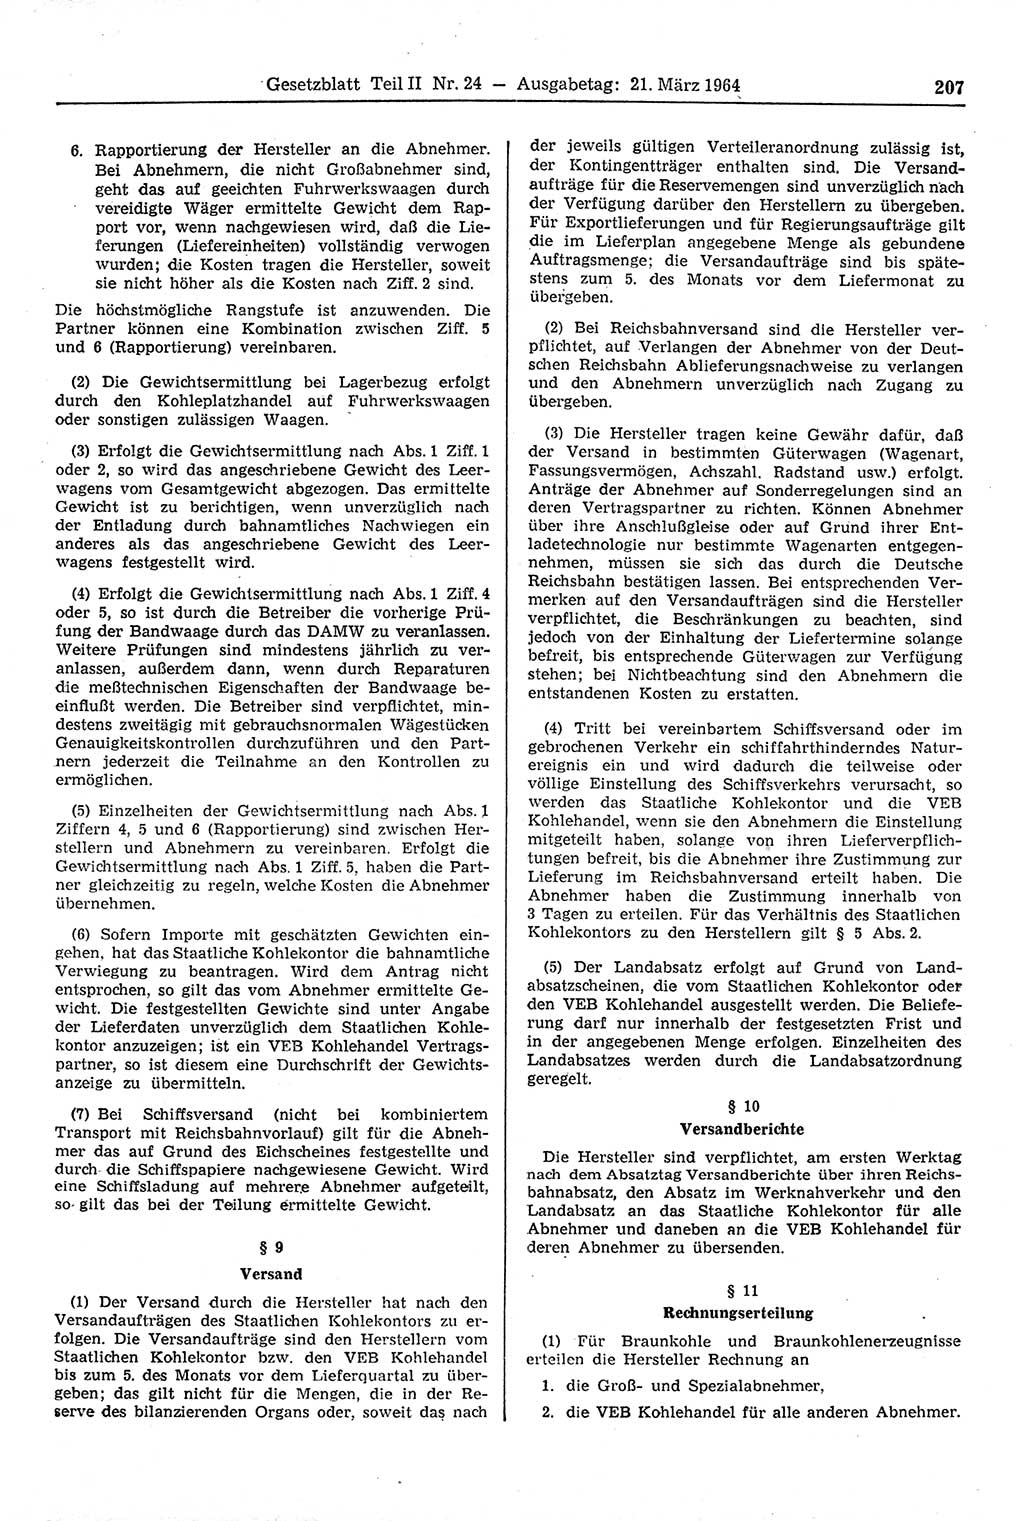 Gesetzblatt (GBl.) der Deutschen Demokratischen Republik (DDR) Teil ⅠⅠ 1964, Seite 207 (GBl. DDR ⅠⅠ 1964, S. 207)